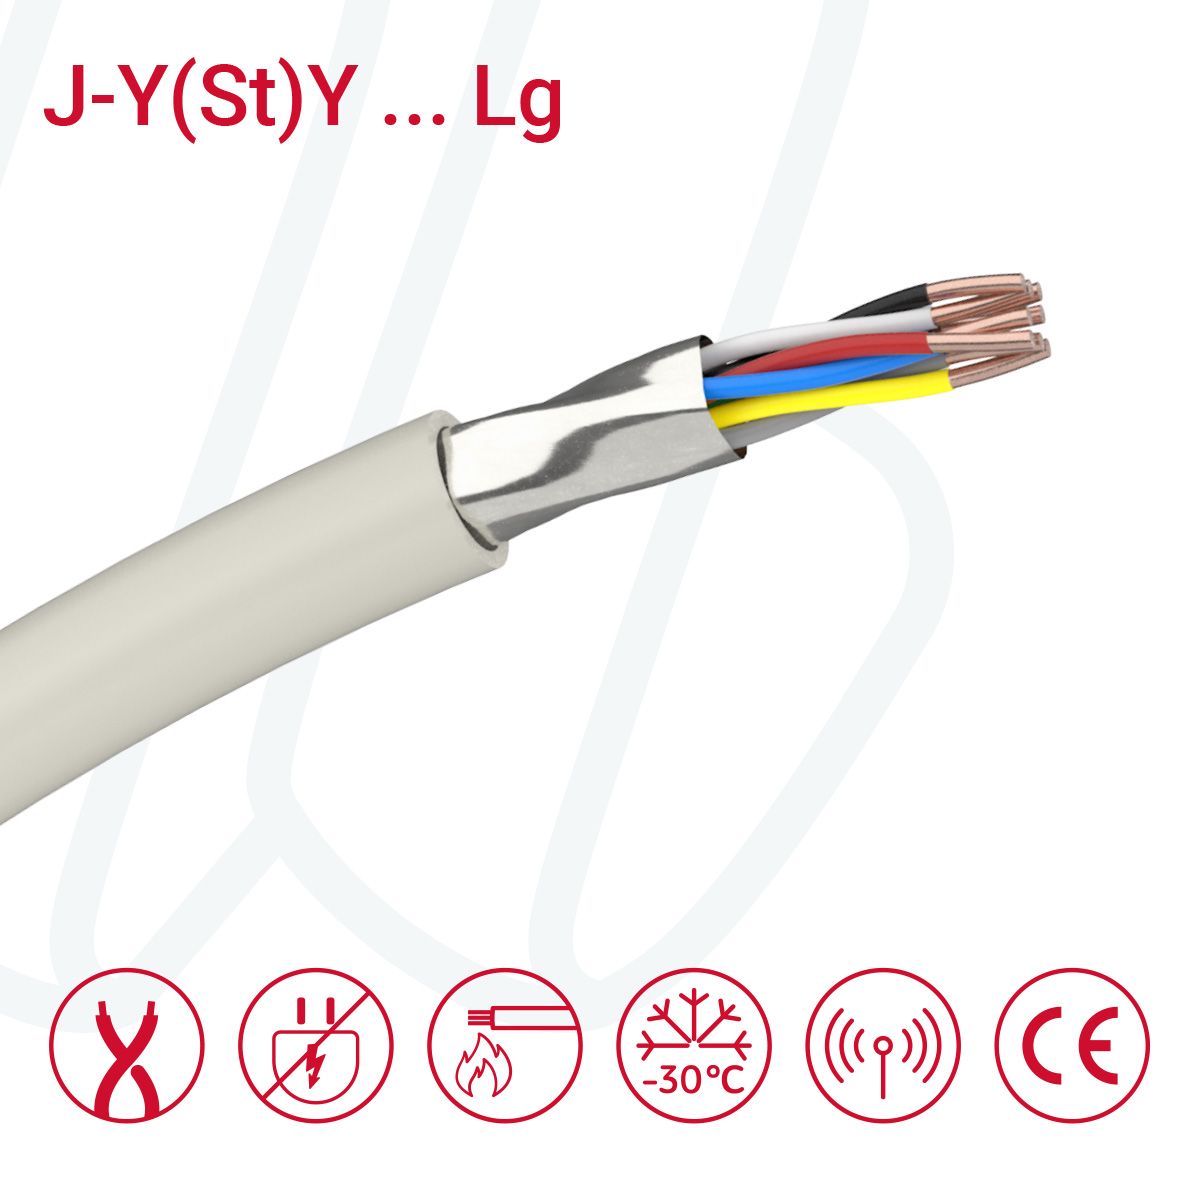 Кабель J-Y(ST)Y...LG 06X2X0.8 (0.52mm²) сірий, 12, 0.52